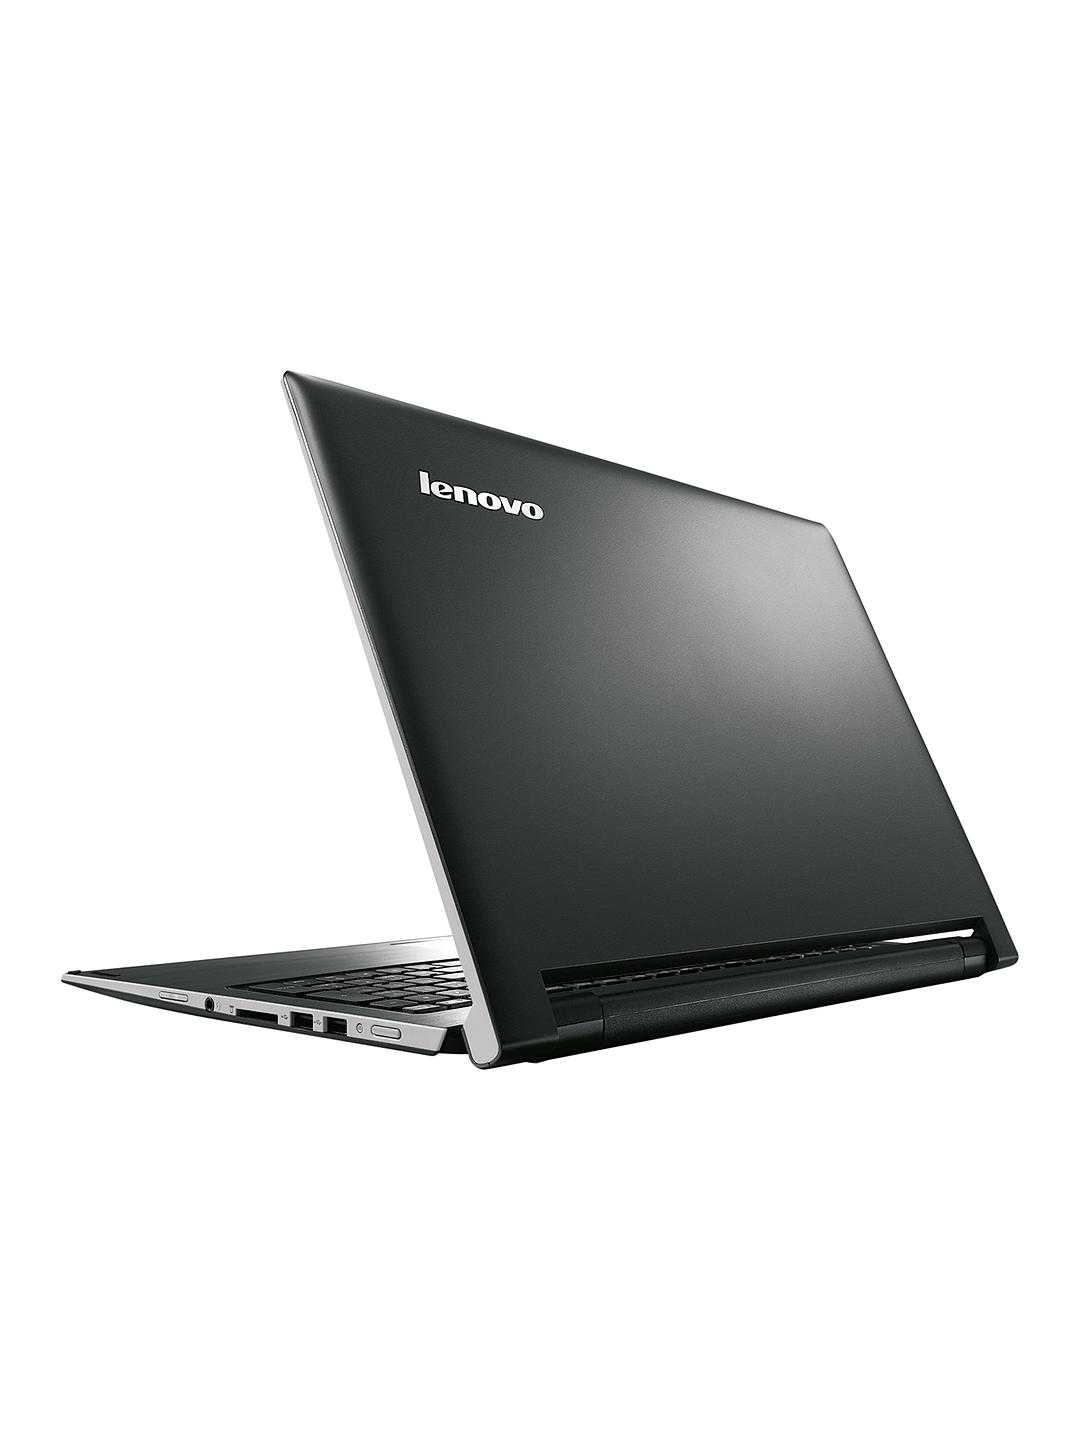 Ноутбук Lenovo IdeaPad Flex 10 (59-426349) - подробные характеристики обзоры видео фото Цены в интернет-магазинах где можно купить ноутбук Lenovo IdeaPad Flex 10 (59-426349)